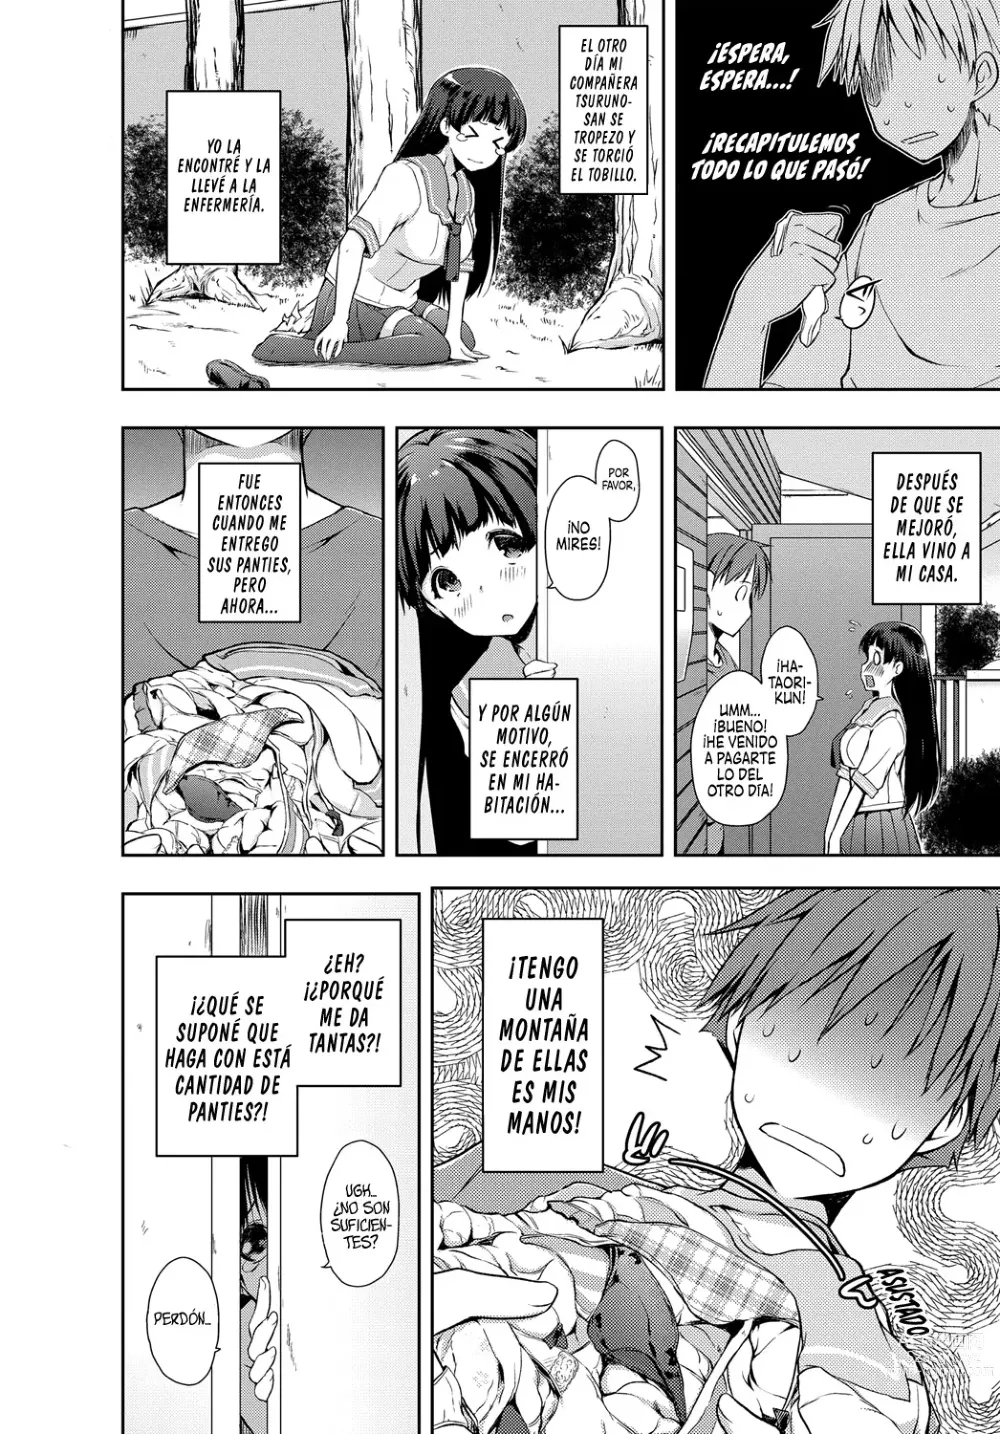 Page 2 of manga Tsuruno-san me quiere Pagar de Cualquier Manera.